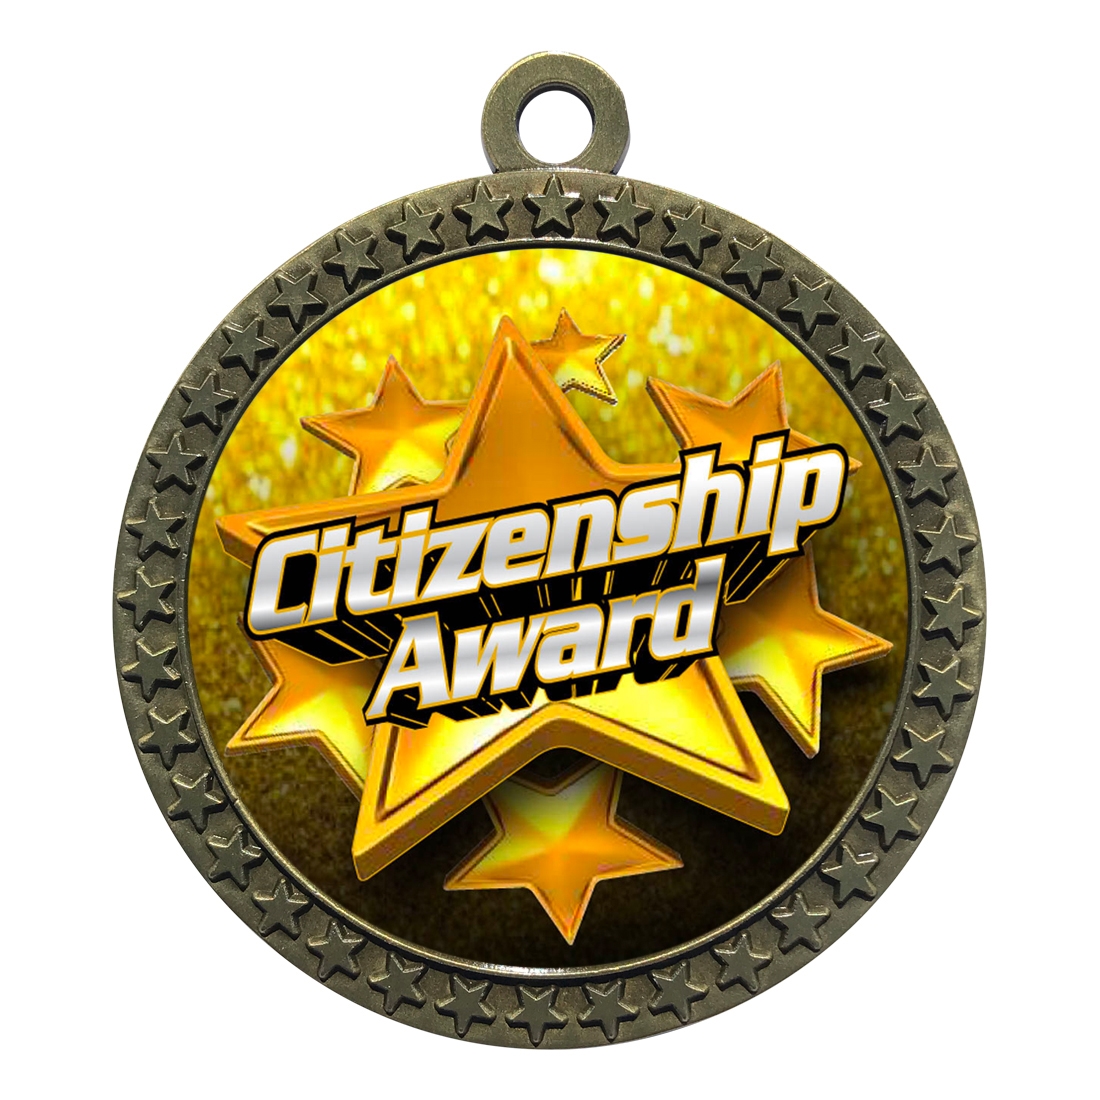 2-1/2" Citizenship Award Medal